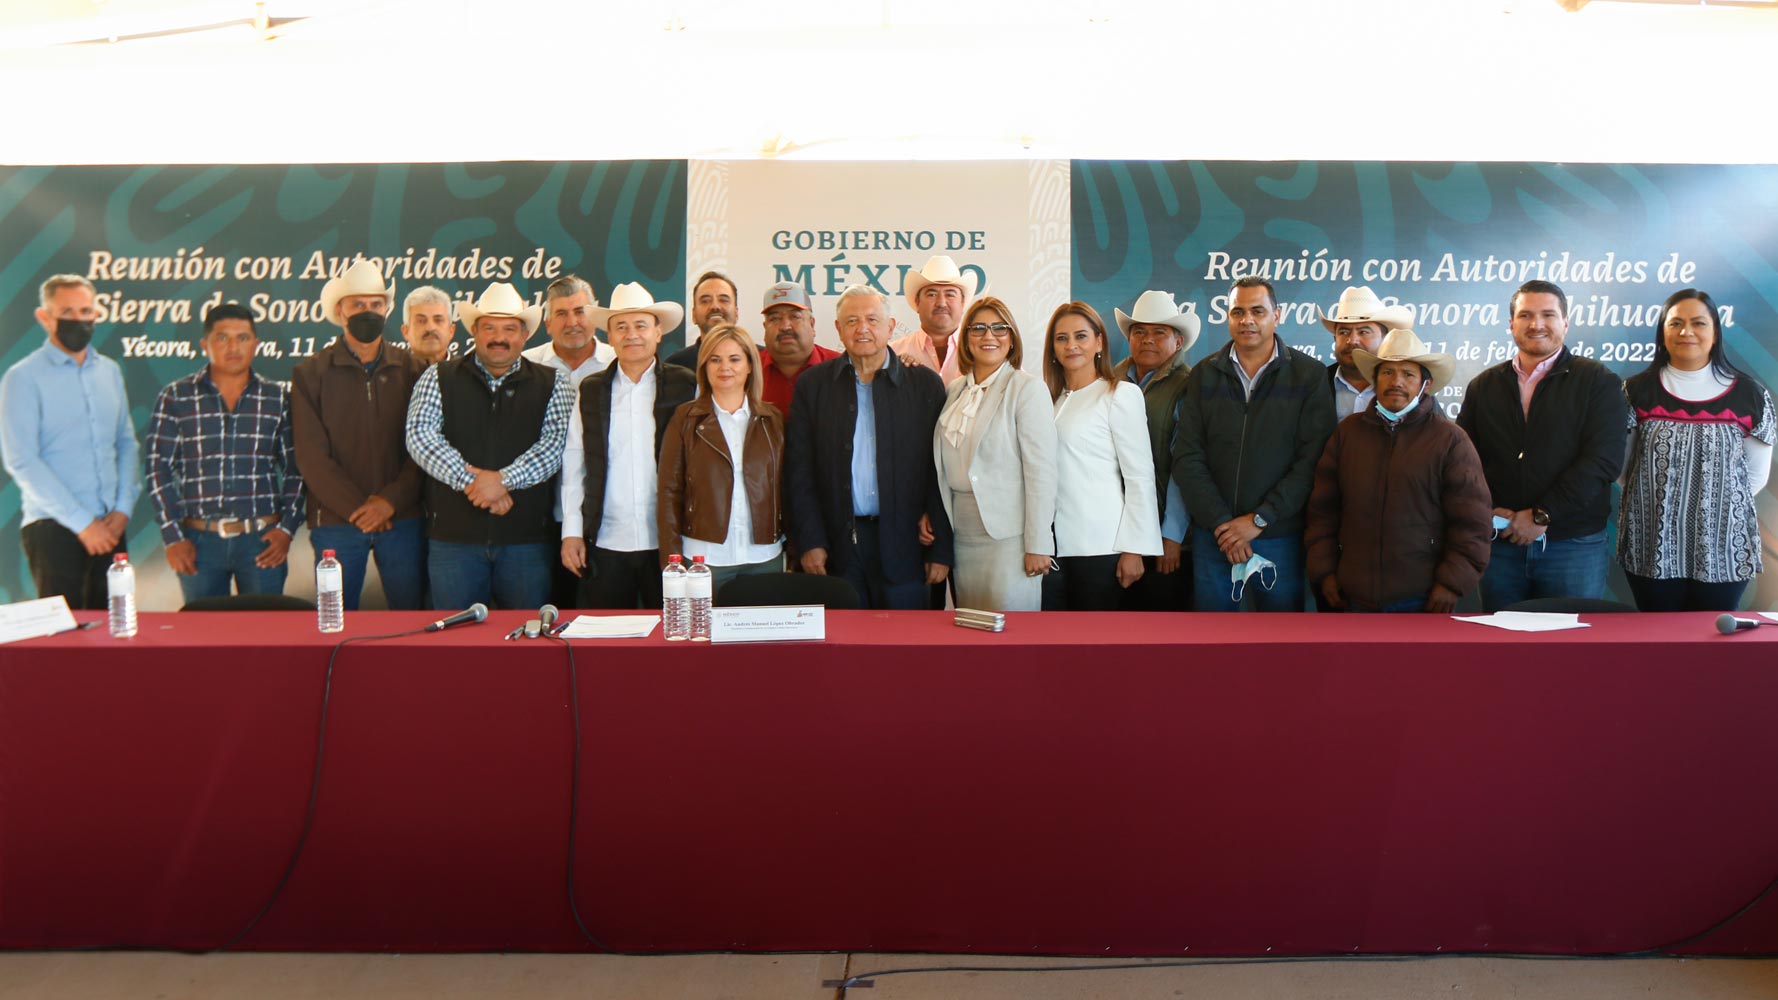 Reafirma Lopez Obrador coordinacion y comunicacion con pueblos de Sonora y Chihuahua